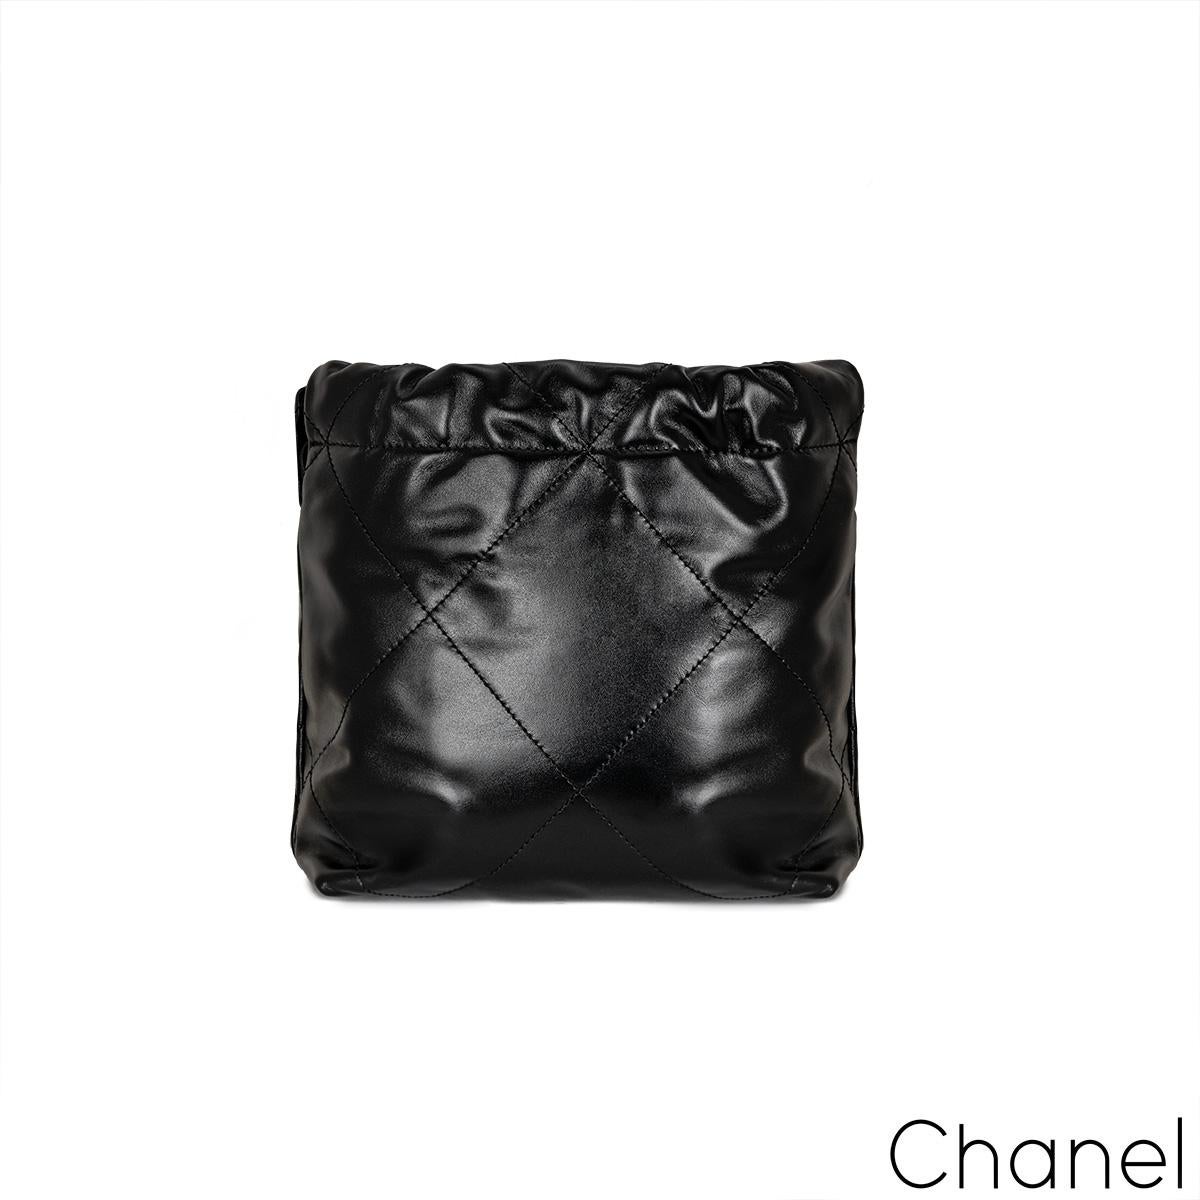 Eine schöne Chanel 22 Mini-Tasche. Das Äußere ist aus gestepptem, schwarzem, glänzendem Kalbsleder mit goldfarbenen Beschlägen gefertigt. Sie verfügt über ein goldfarbenes Logo auf der Vorderseite, ein baumelndes CC-Logo-Medaillon und einen